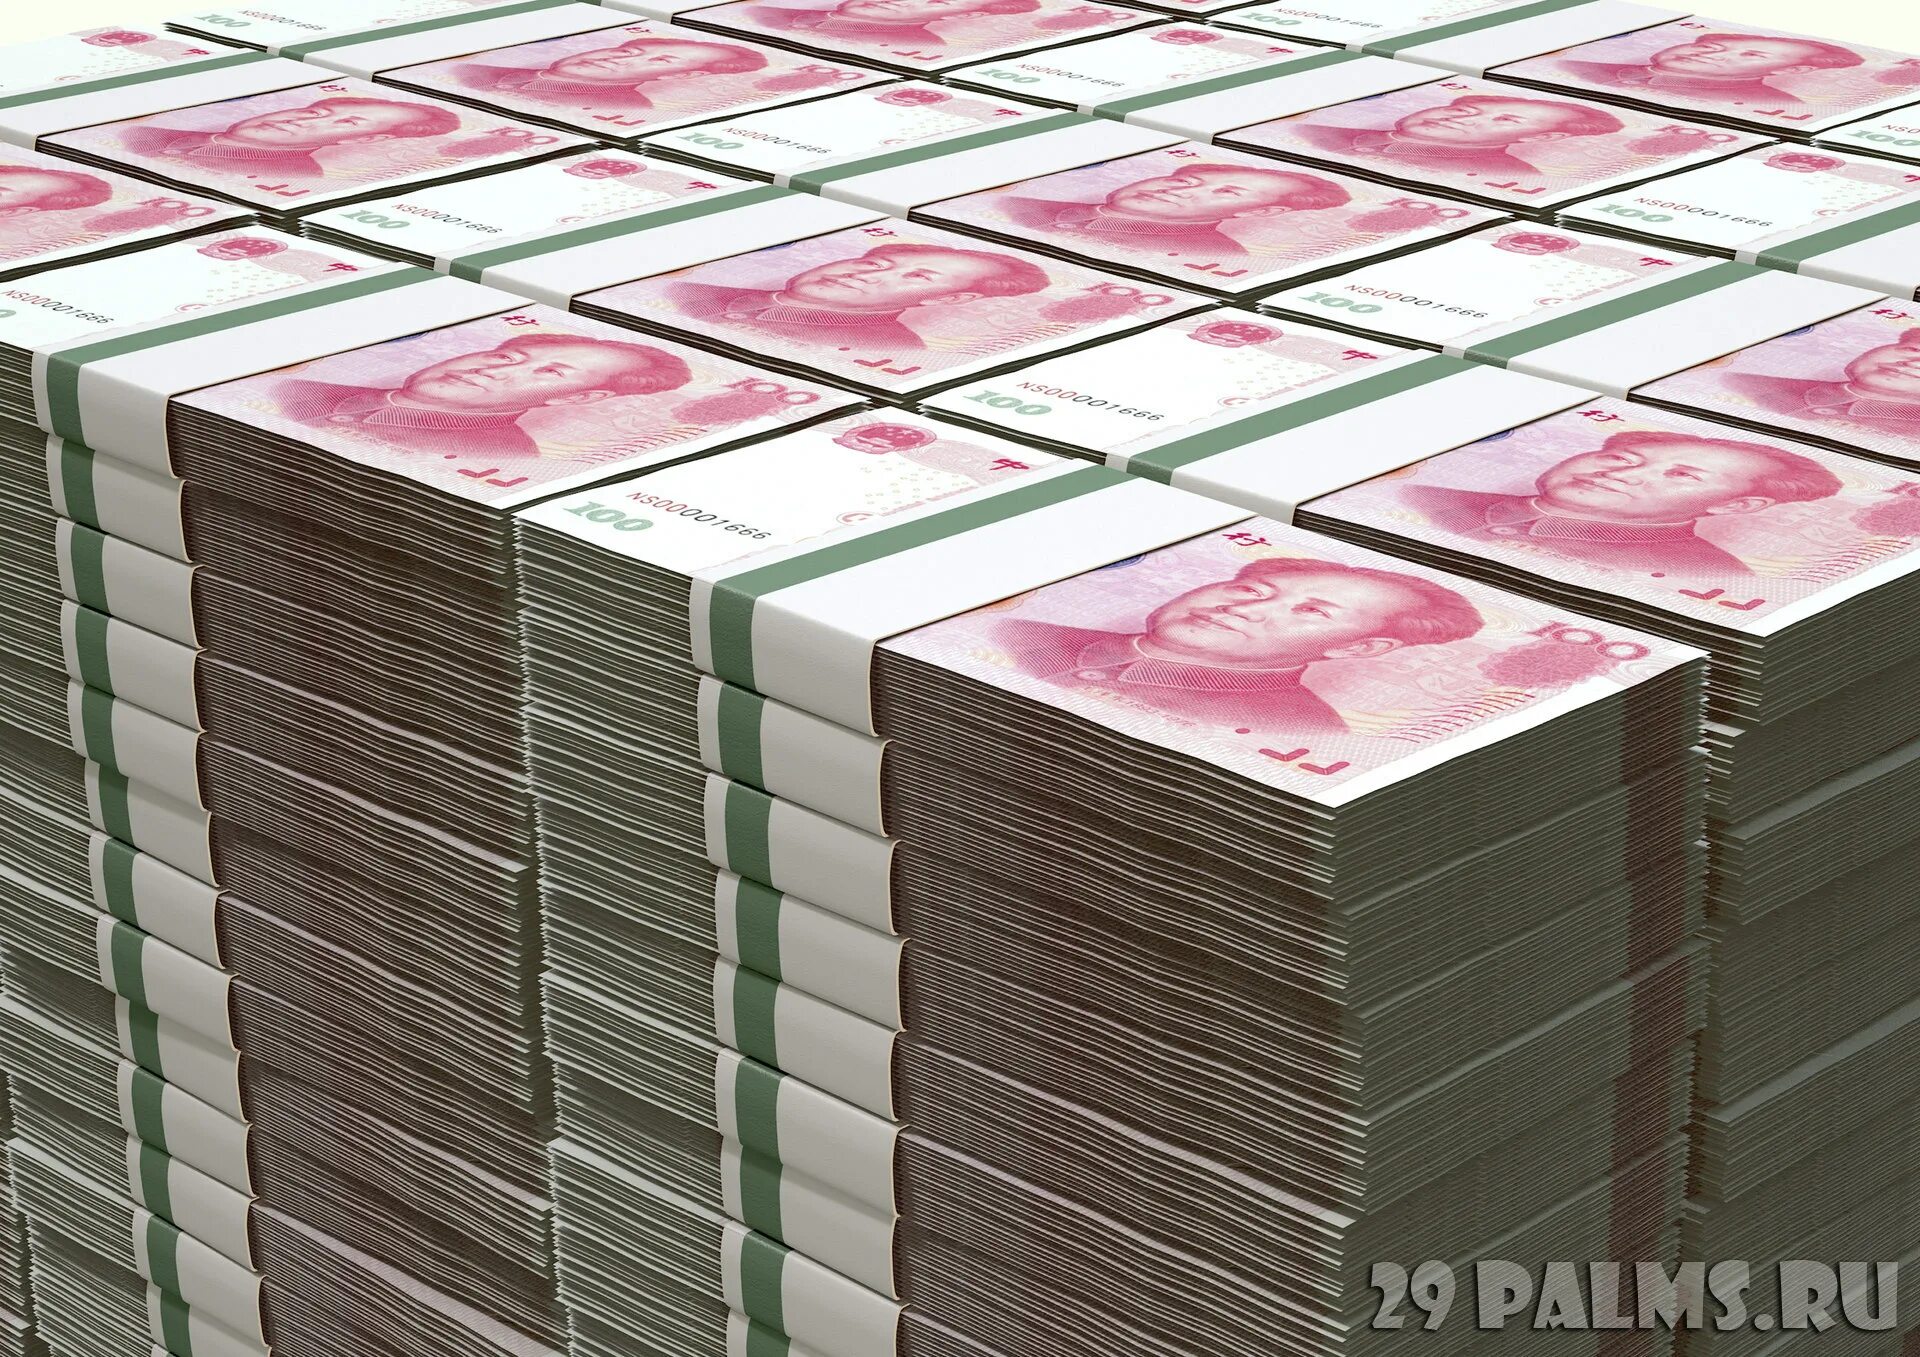 Пачка китайских денег. Юань пачки. Много юаней. Юани пачки купюр. 1000000 рублей в юанях